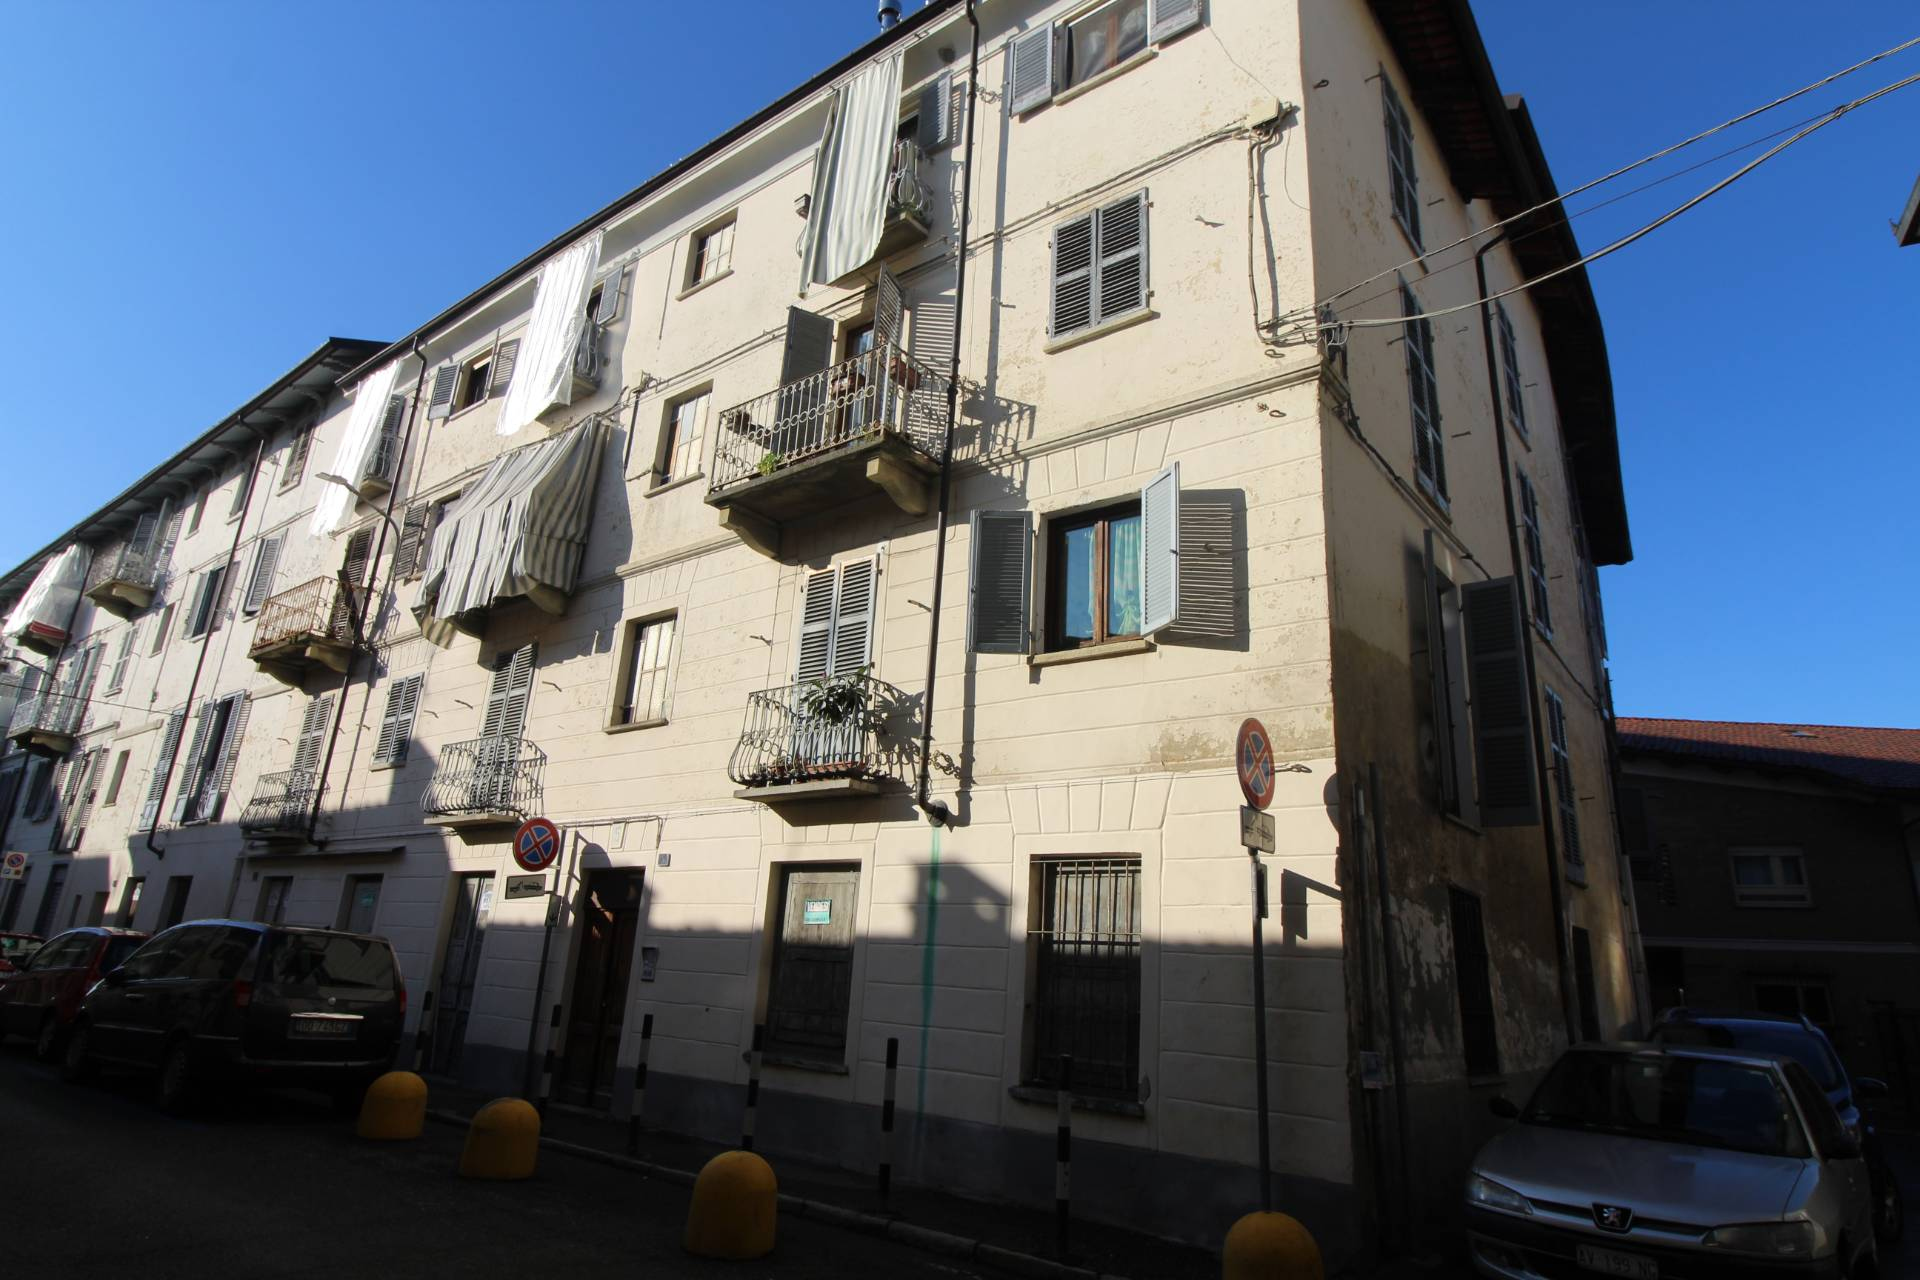 Appartamento in affitto a Venaria Reale, 2 locali, zona Località: Centro, prezzo € 45.000 | CambioCasa.it